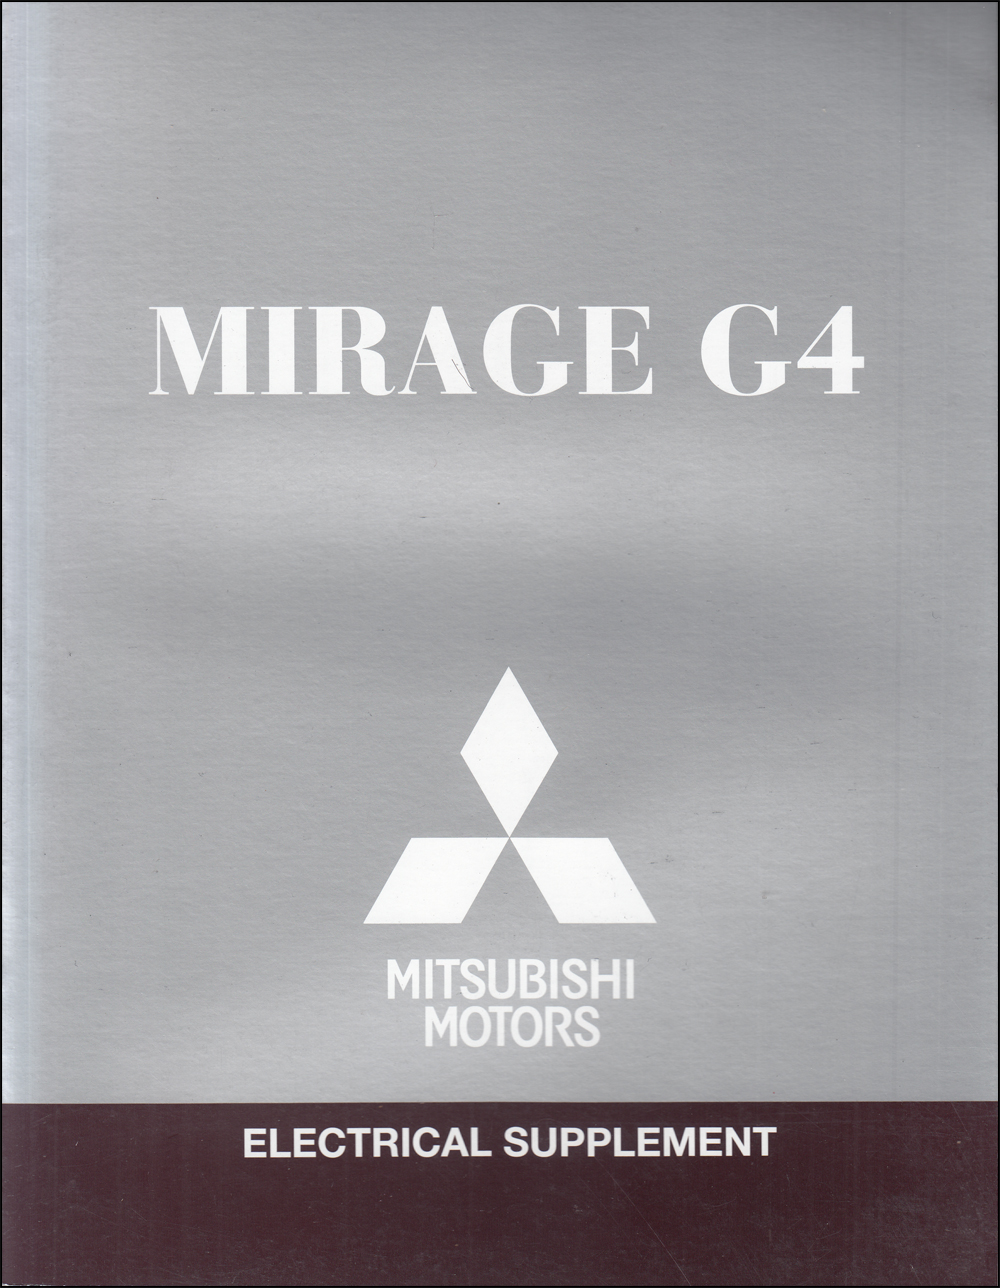 2018 Mitsubishi Mirage G4 Wiring Diagram Manual Original 